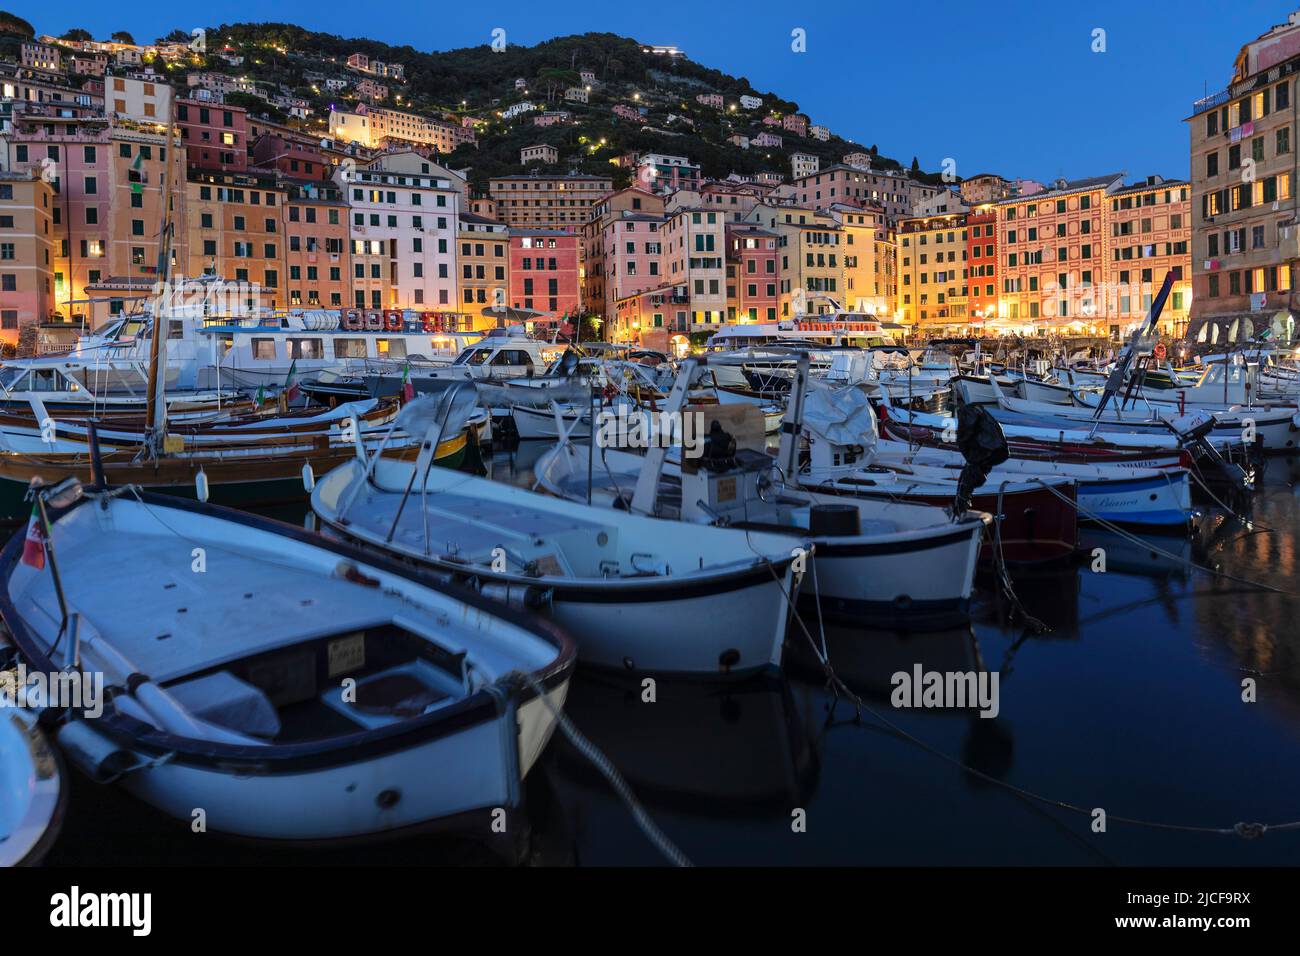 Port of Camogli, Rivera di Levante, Province of La Spazia, Liguria, Italy Stock Photo